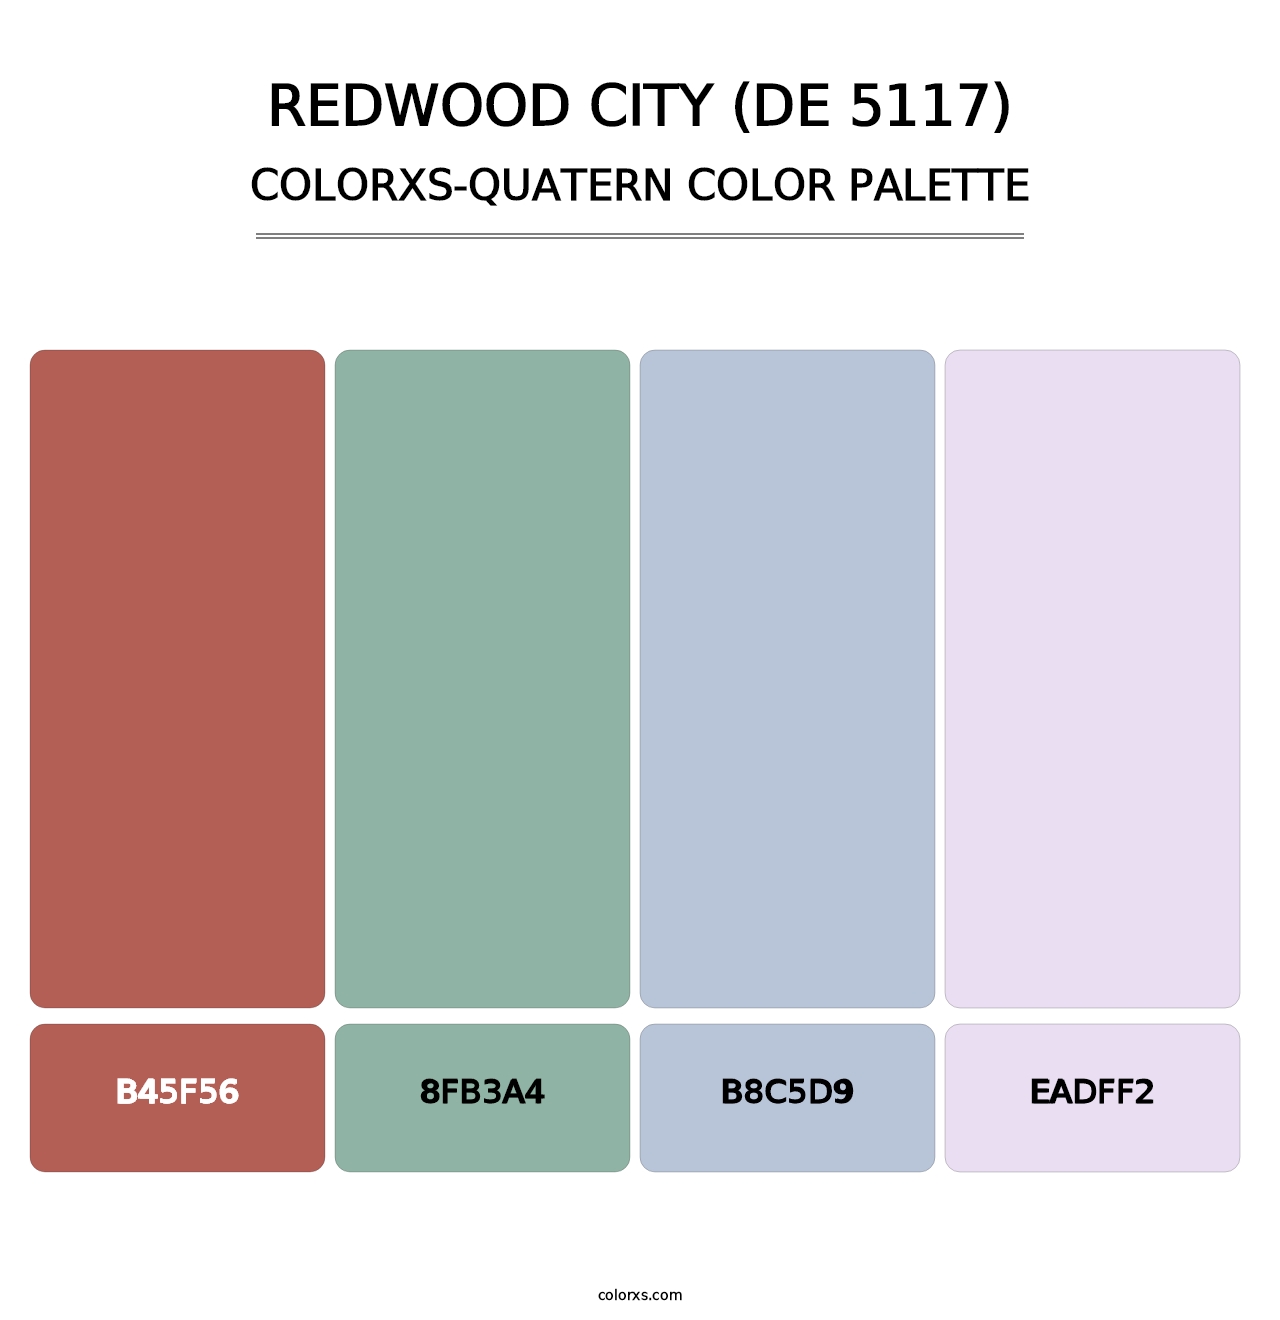 Redwood City (DE 5117) - Colorxs Quatern Palette